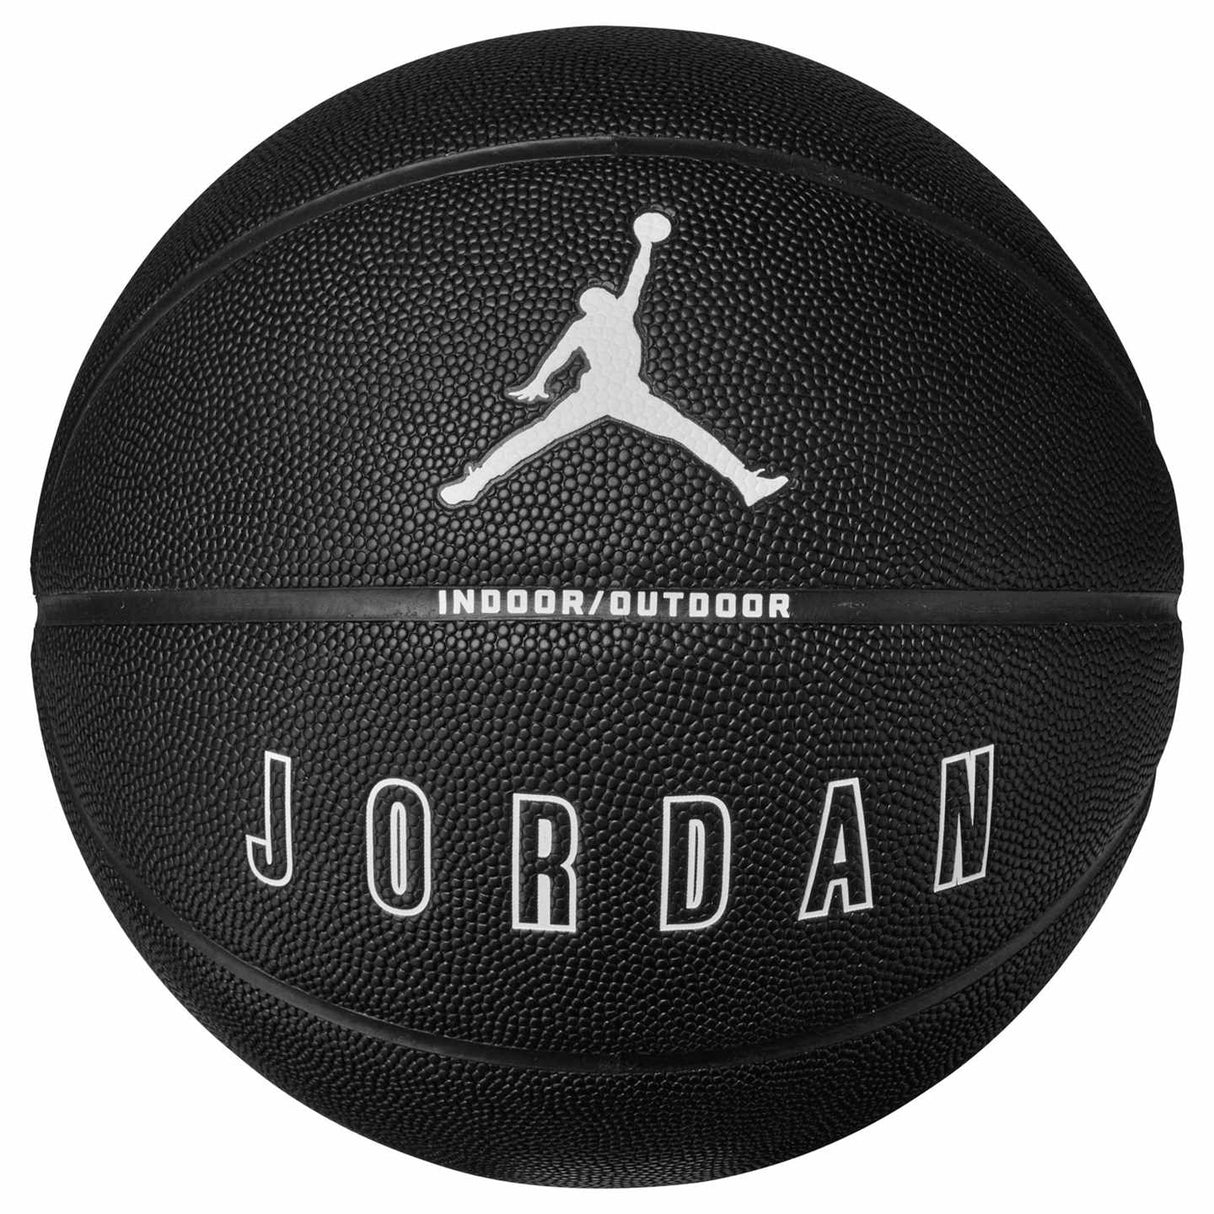 Jordan Ultimate 2.0 8P Graphic Basketball